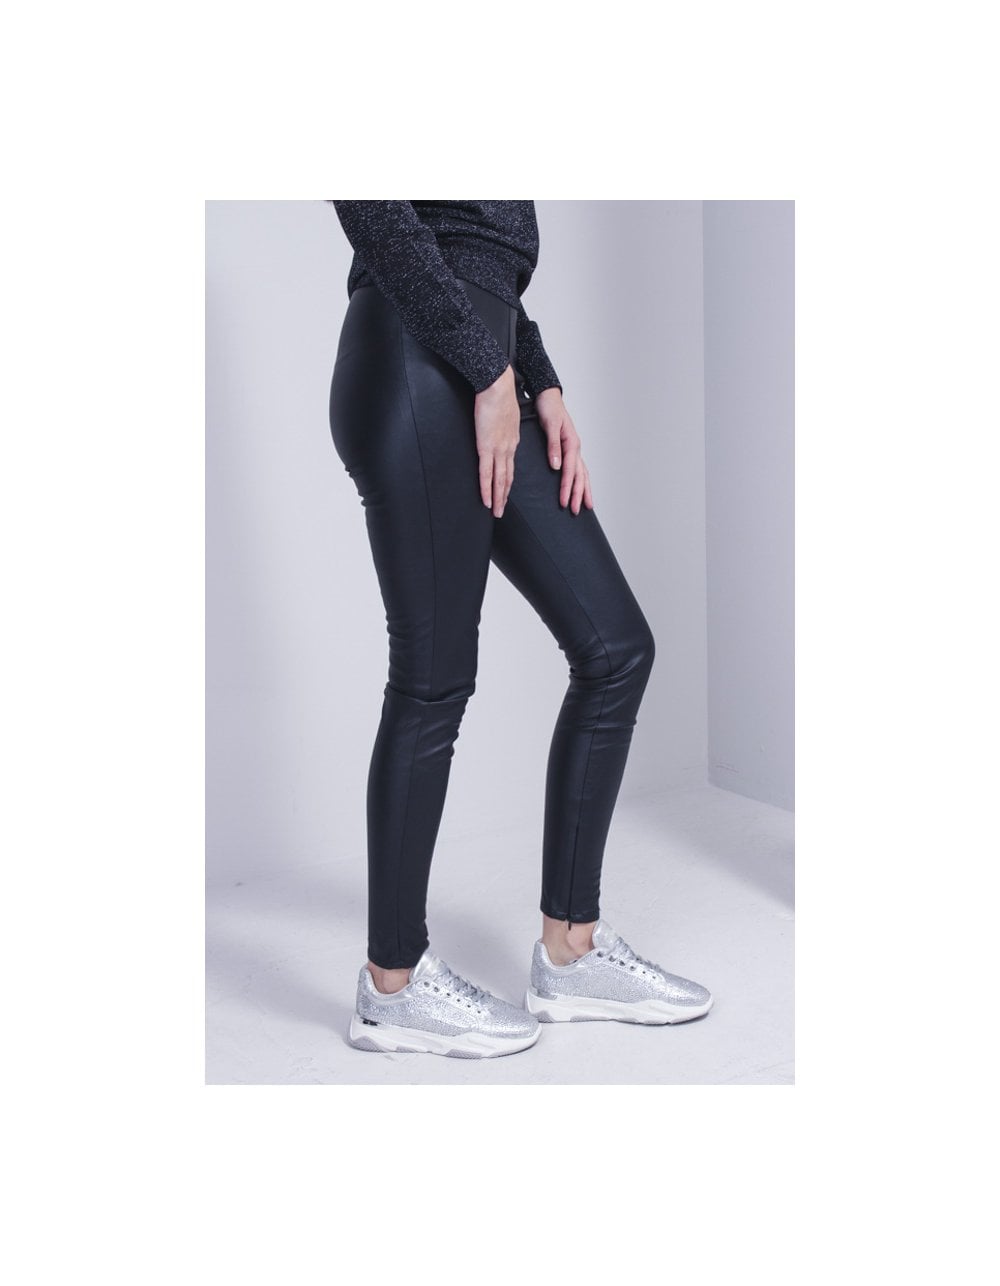 Maison D'Amelie Paris Black Faux Leather Leggings S | Black faux leather  leggings, Faux leather leggings, Leather pants